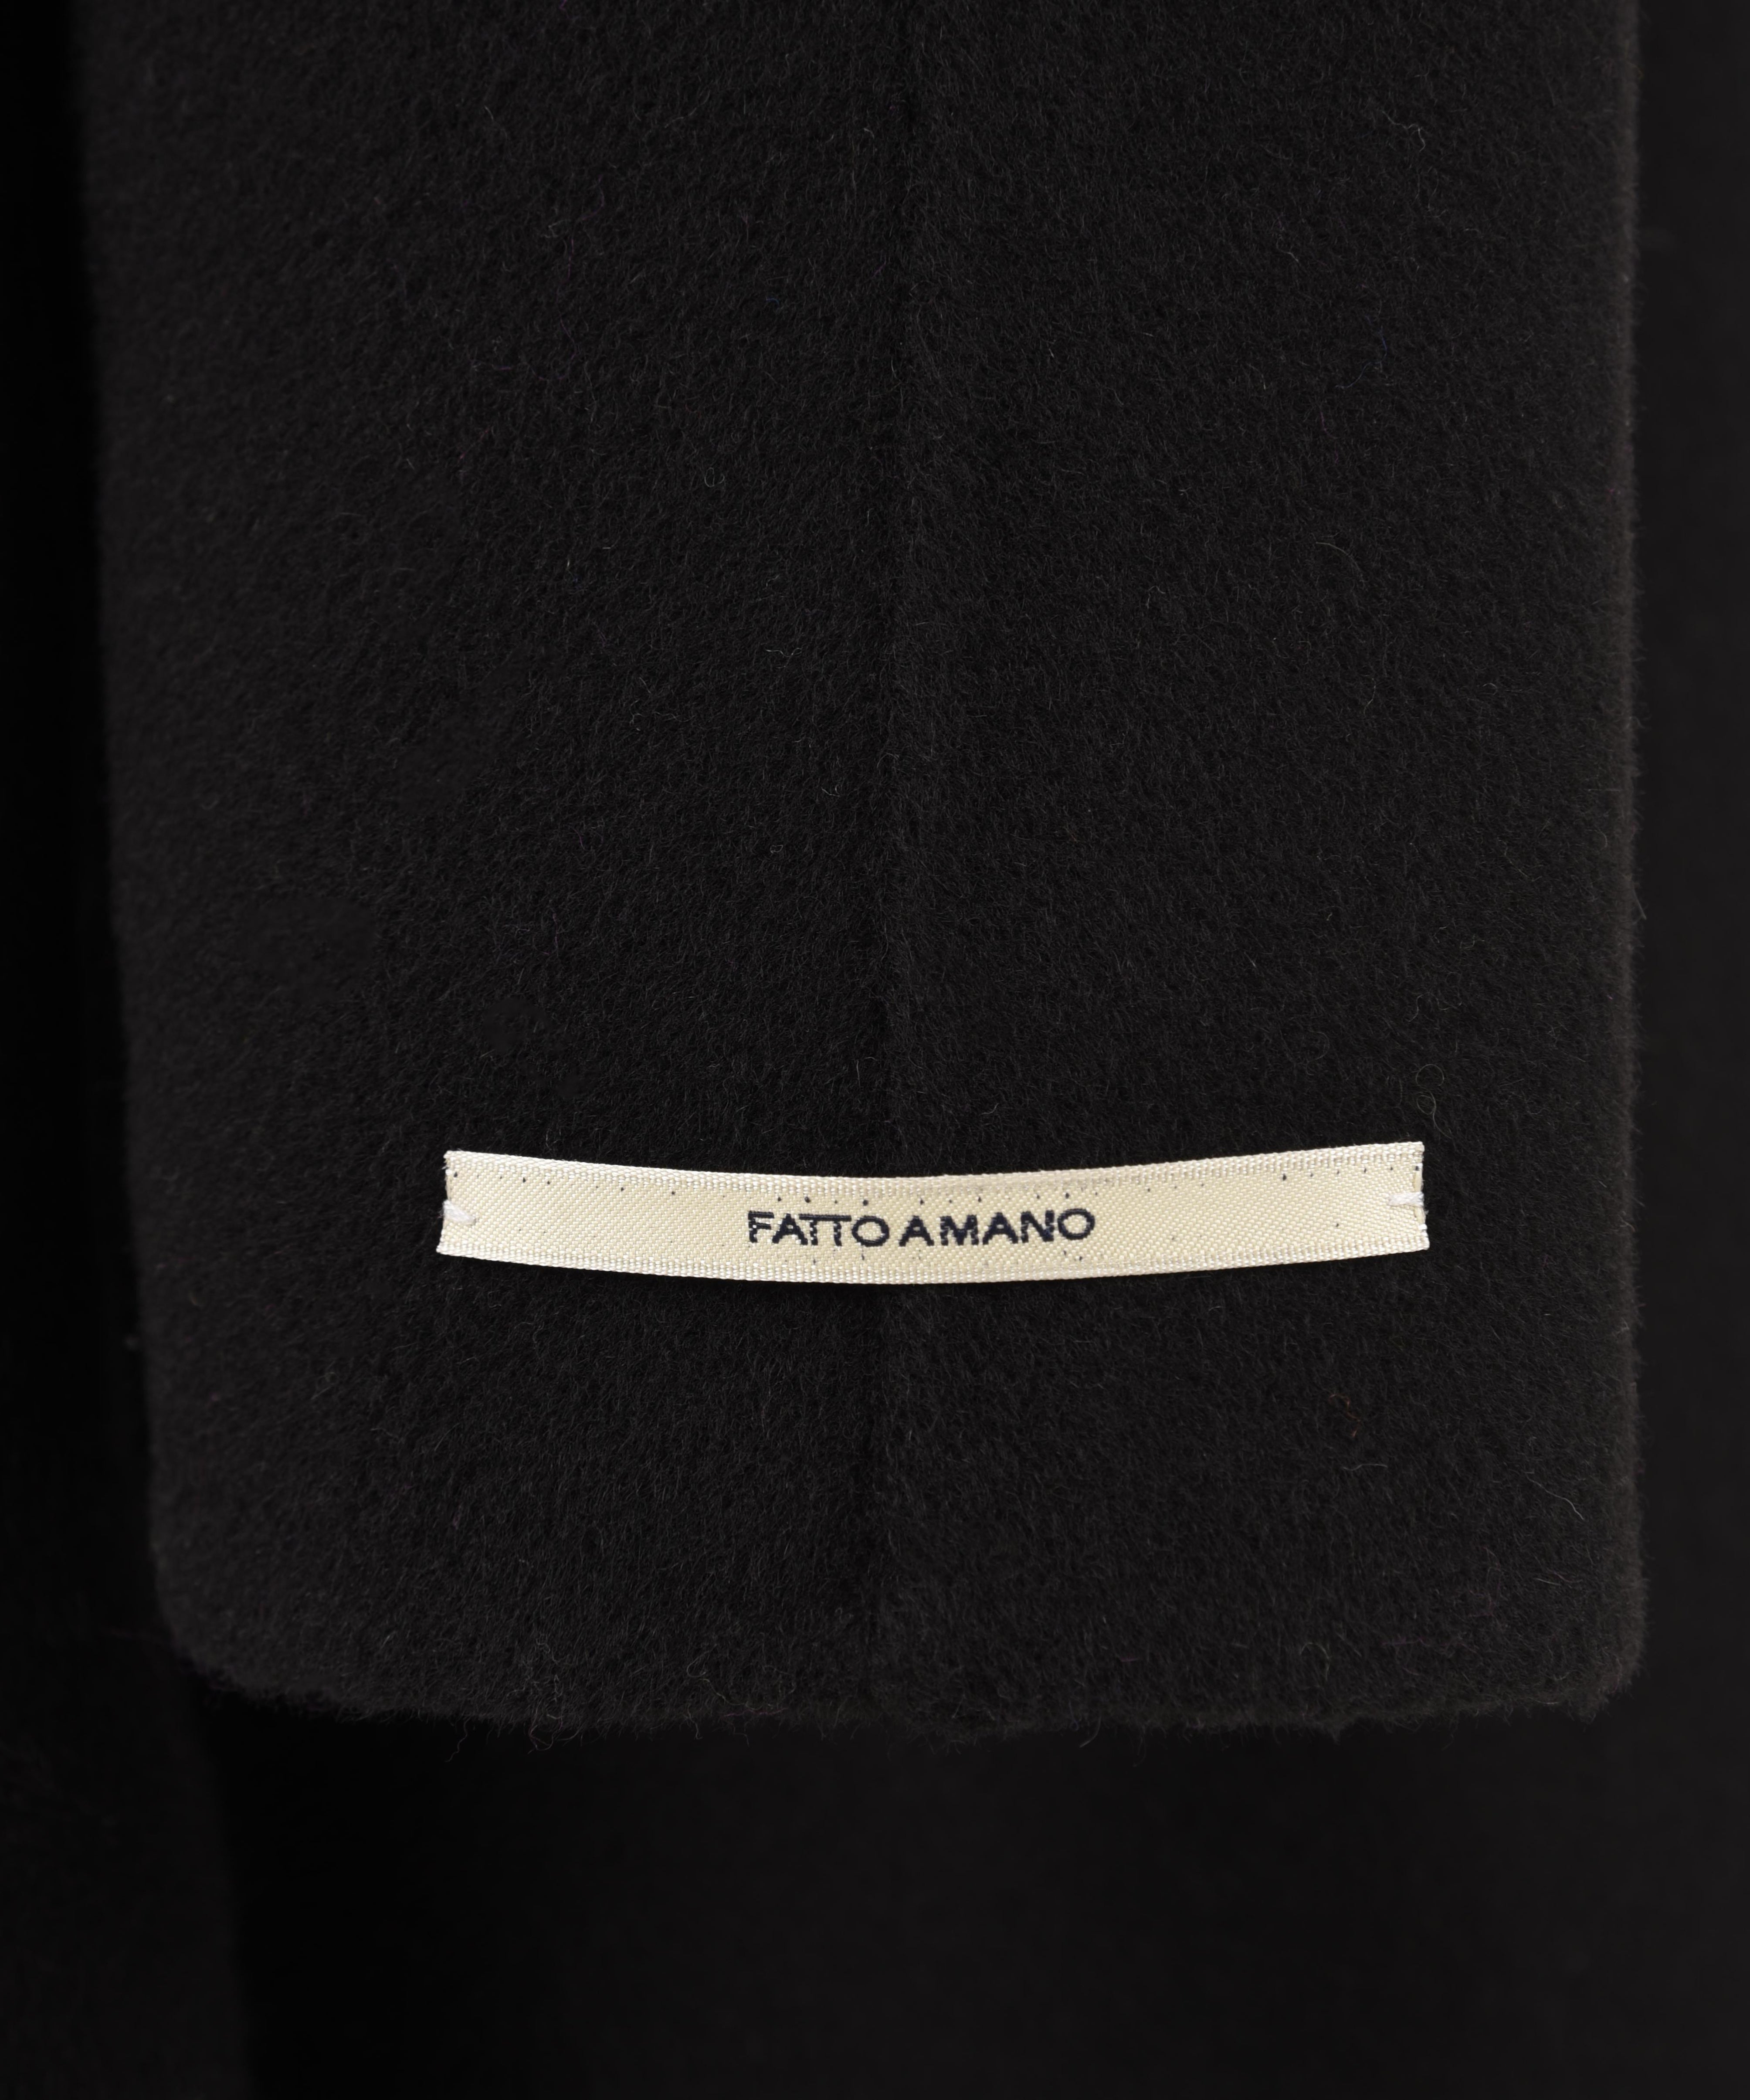 Cappotto lungo Donna in lana nero, Glox, etichetta